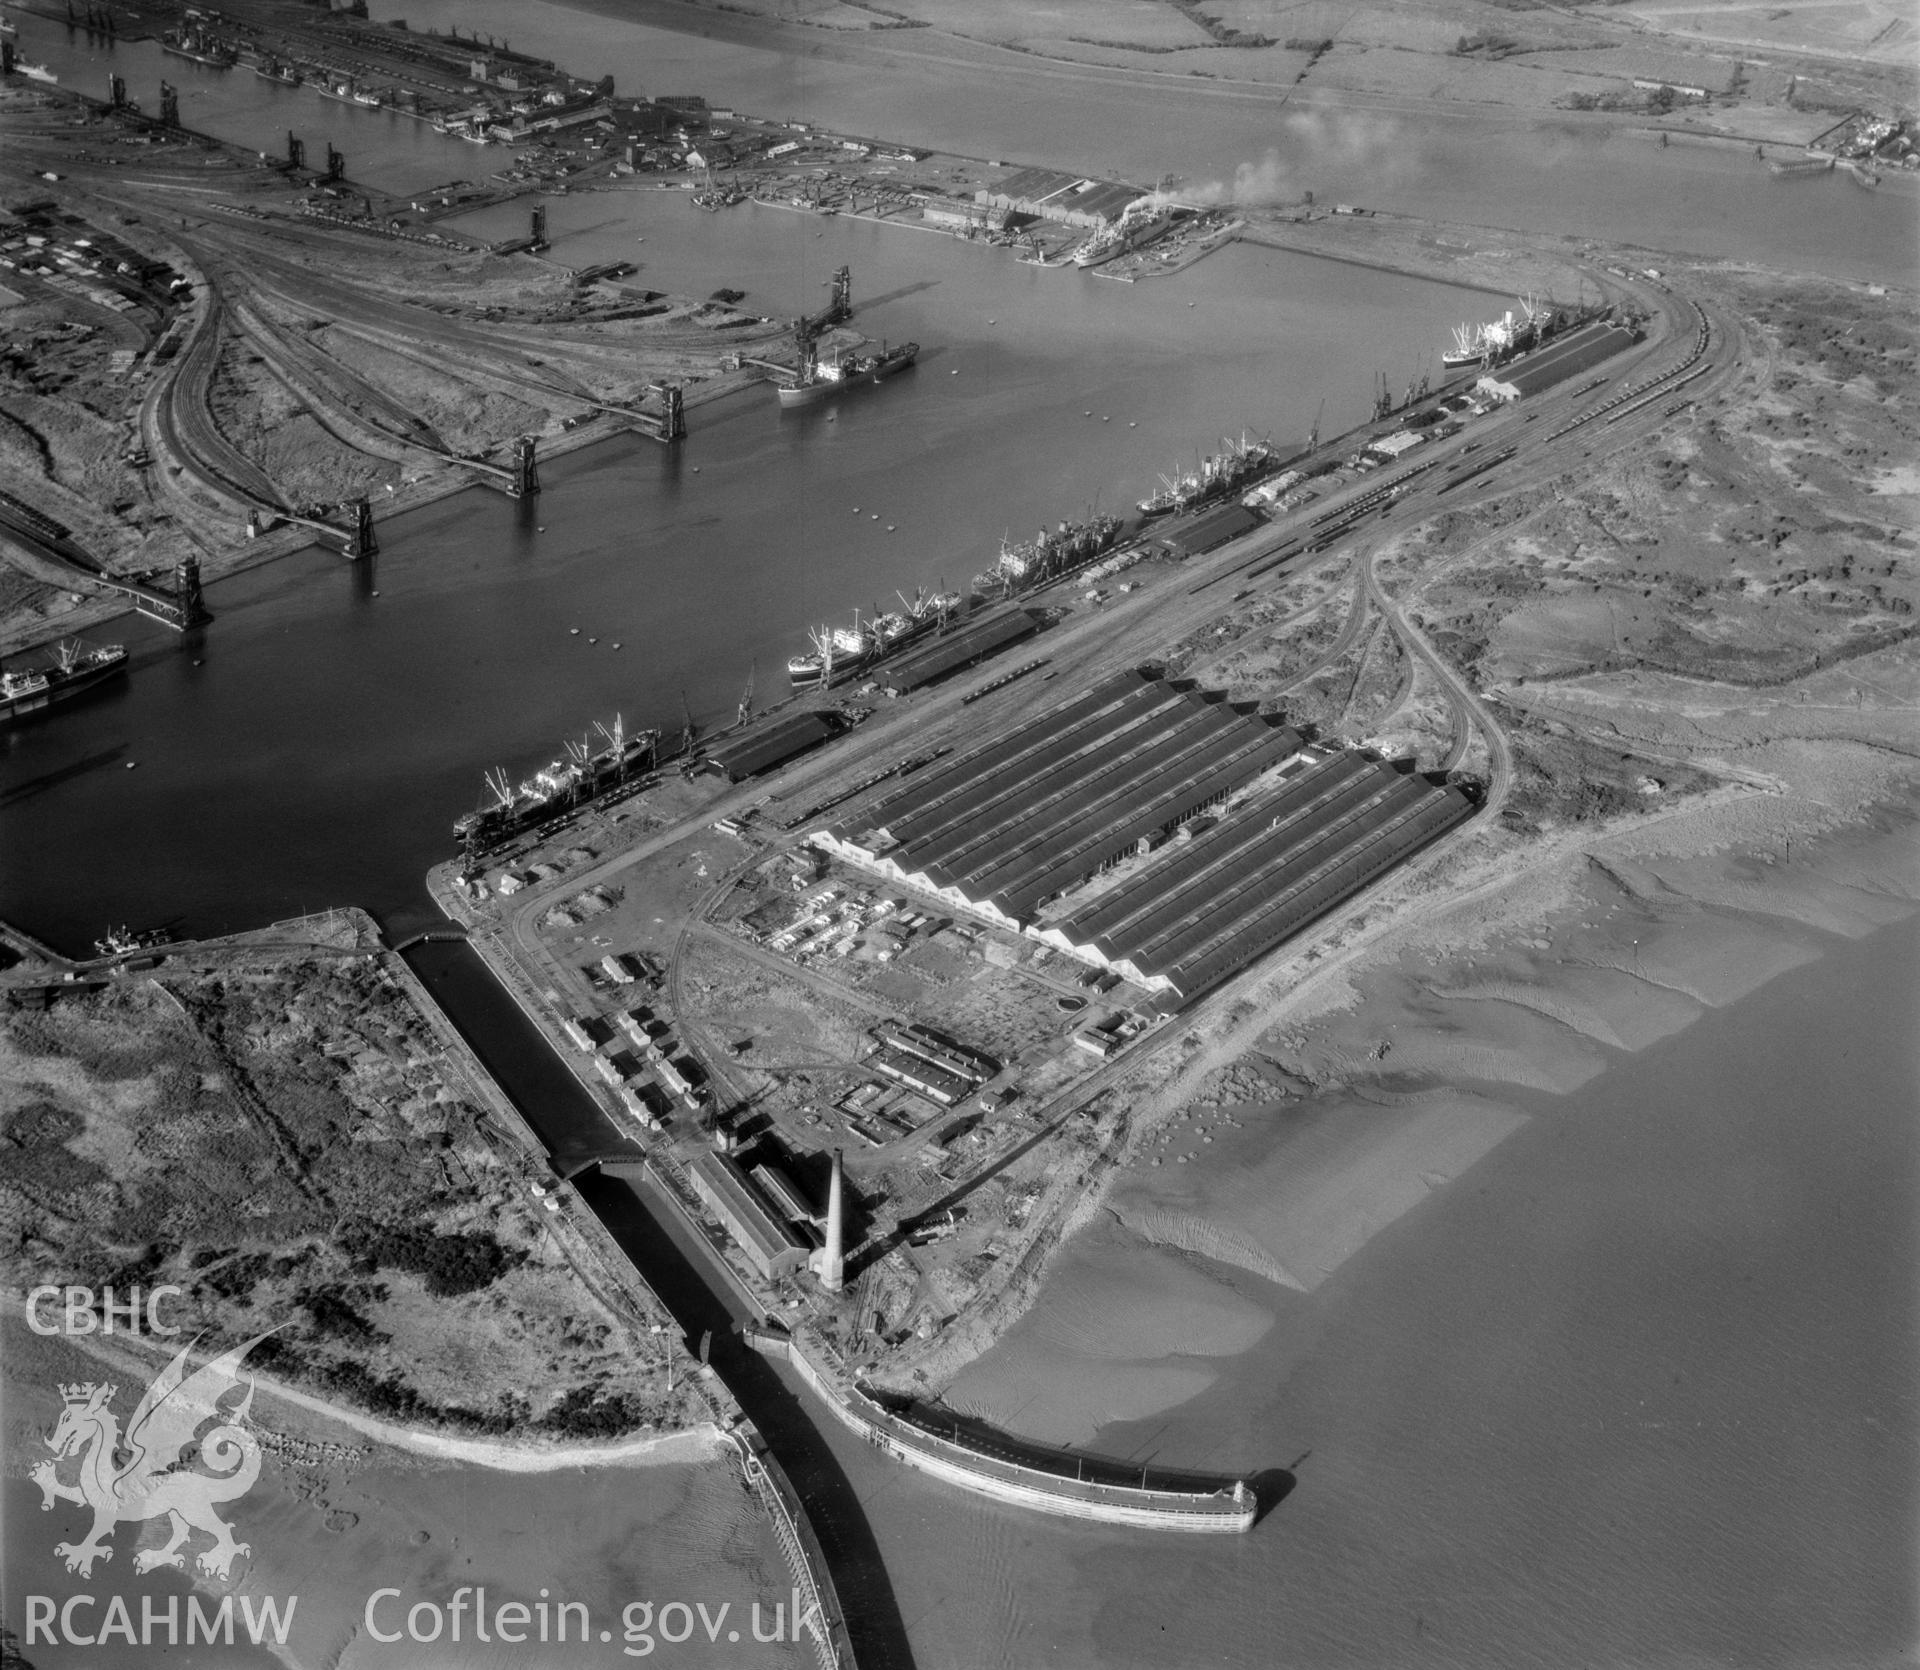 View of Newport Docks